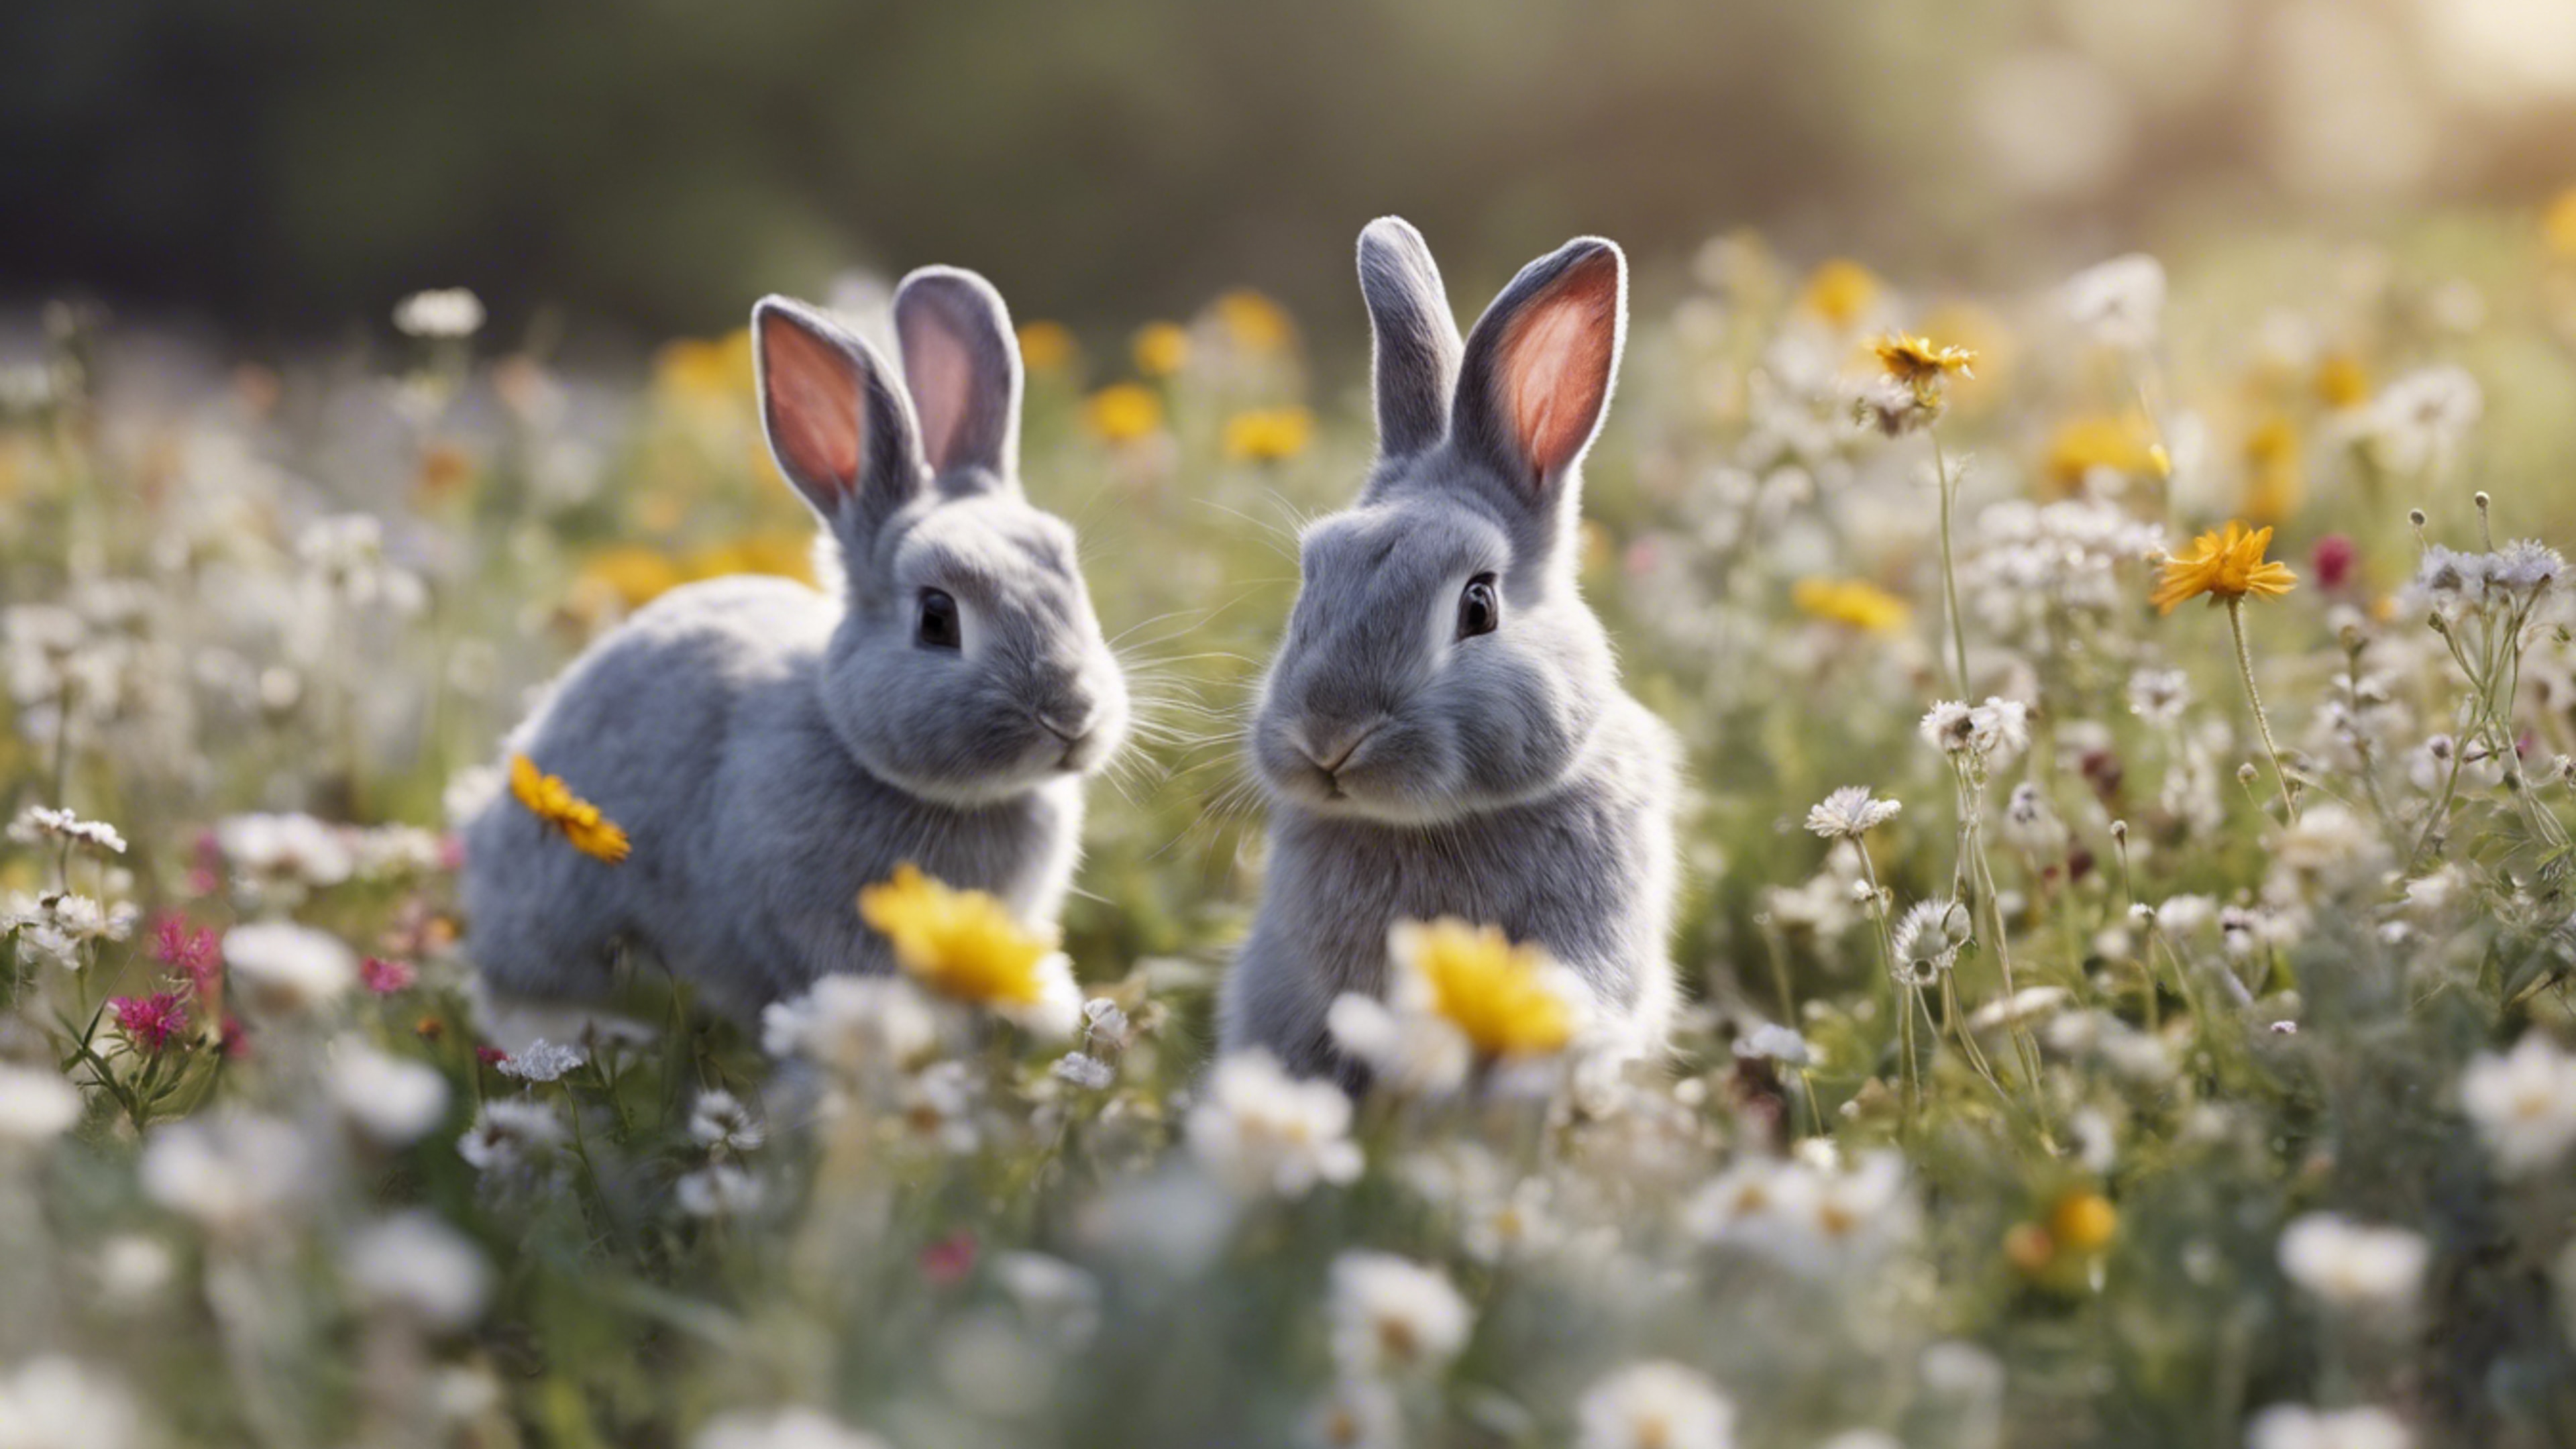 A delightful scene of light gray bunnies hopping joyfully in a field of wildflowers. Wallpaper[55b62c2e72f746fbb97a]